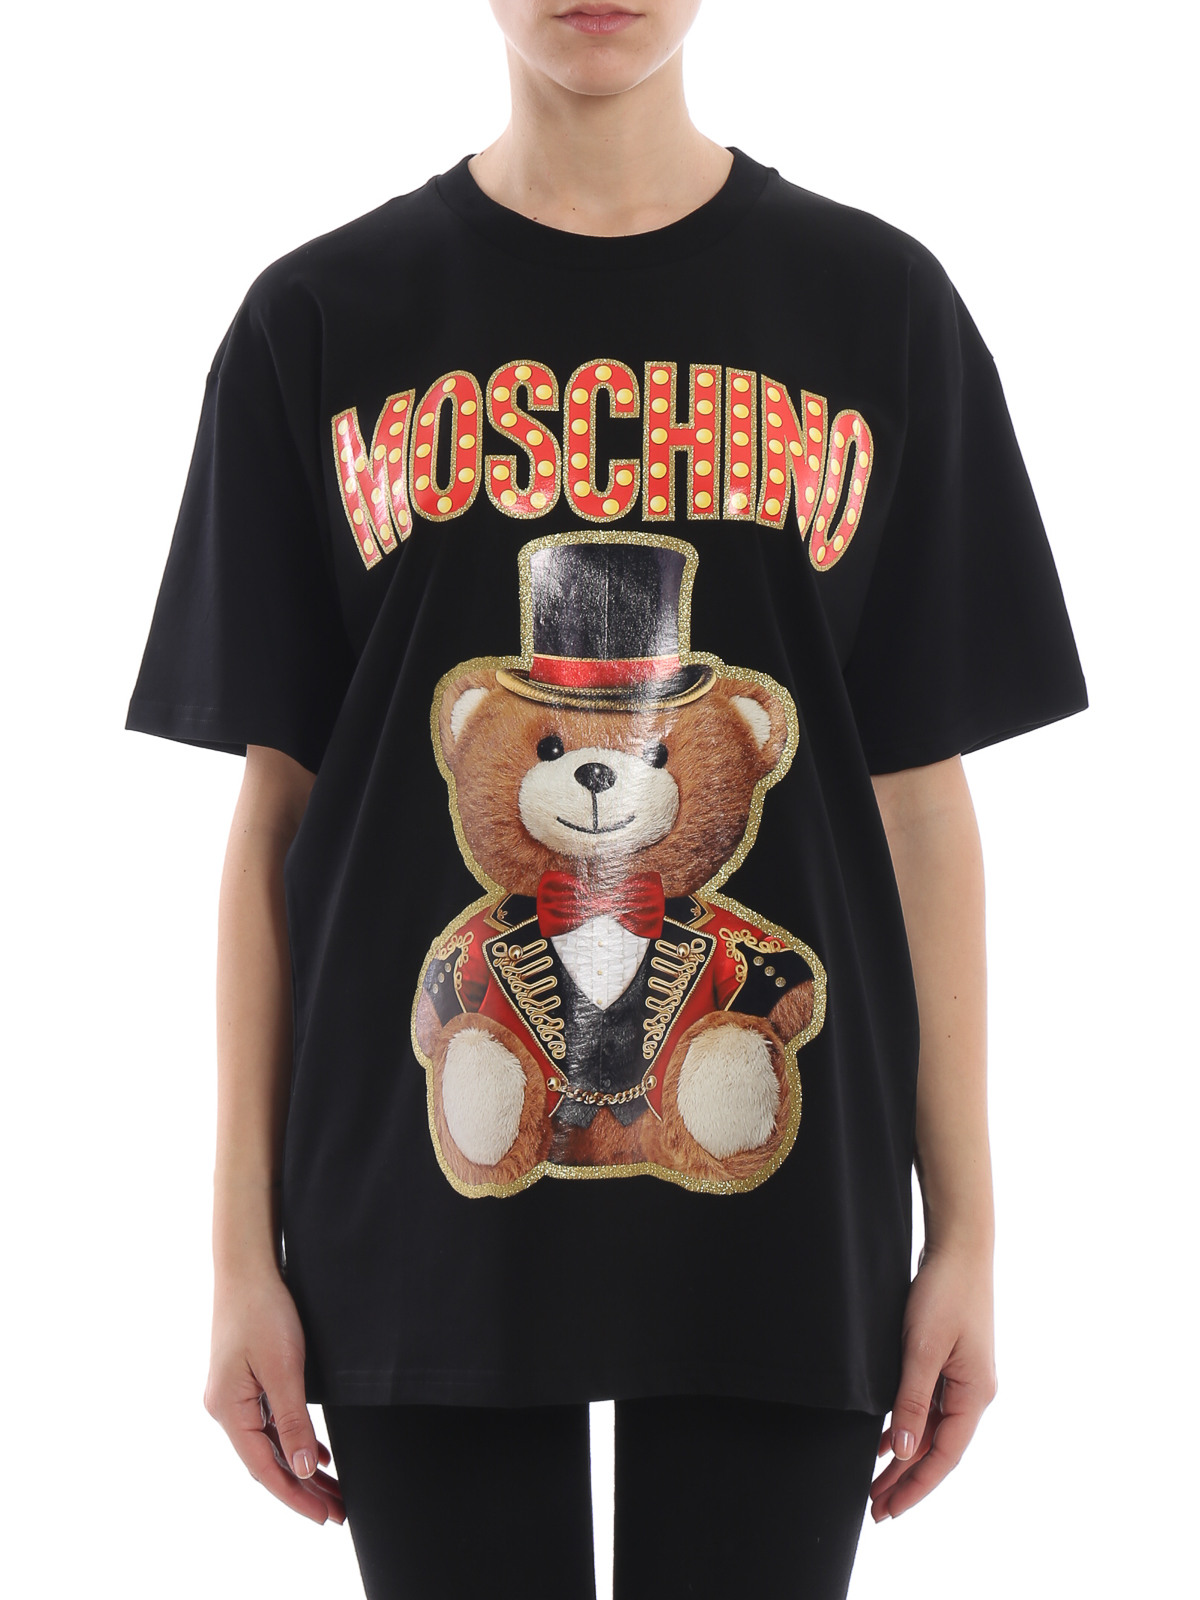 moschino oversized t shirt size chart